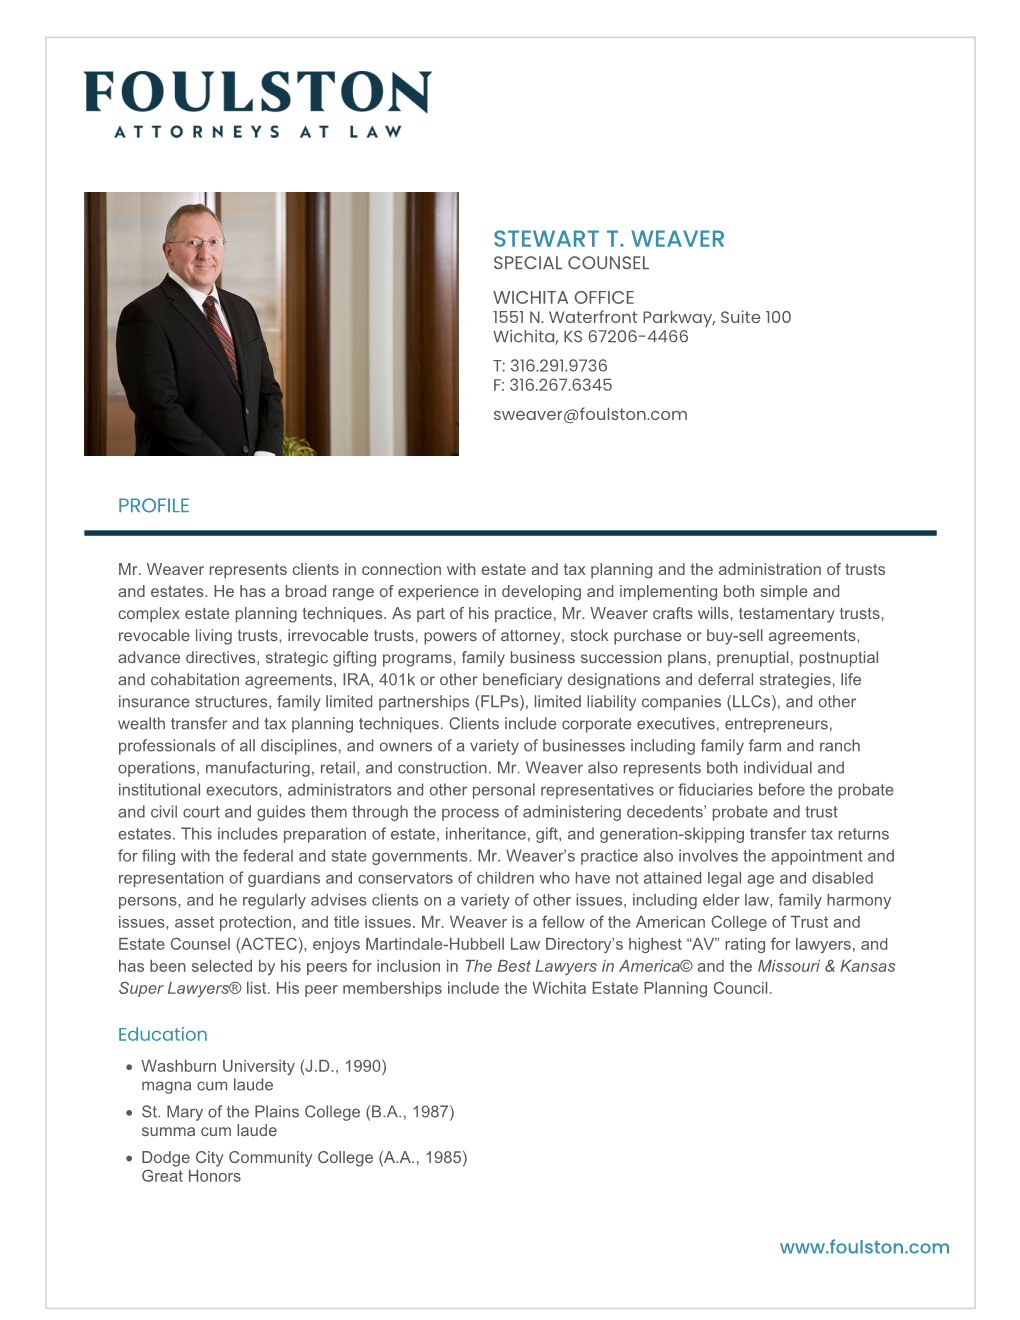 Stewart T. Weaver Special Counsel Wichita Office 1551 N